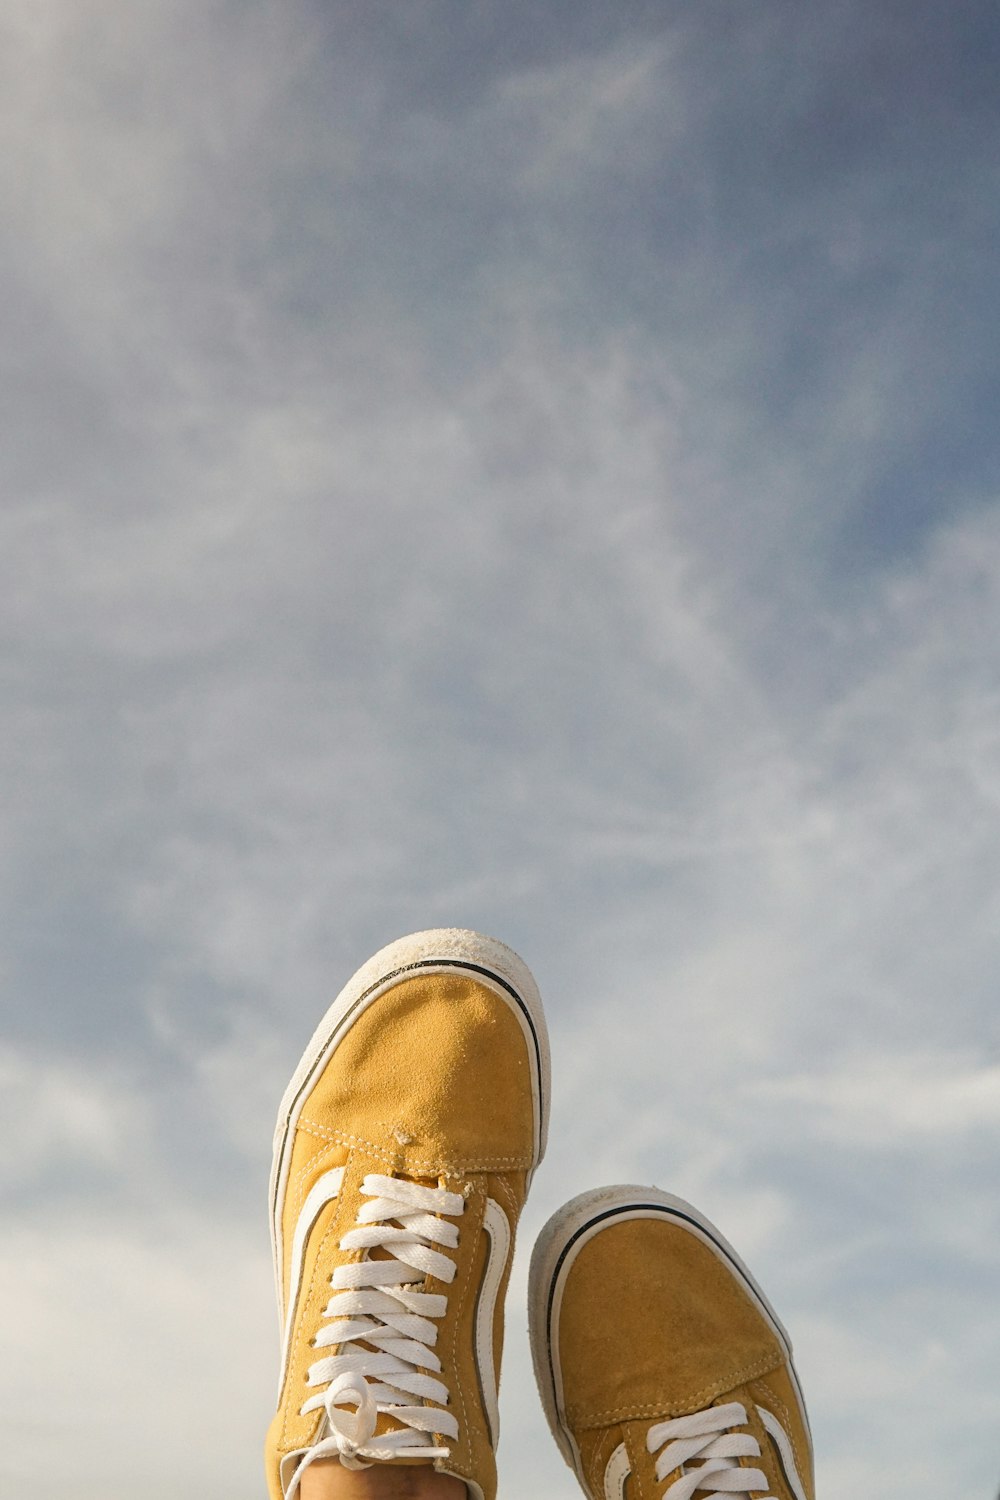 Piedi di una persona con scarpe gialle in piedi su una sporgenza